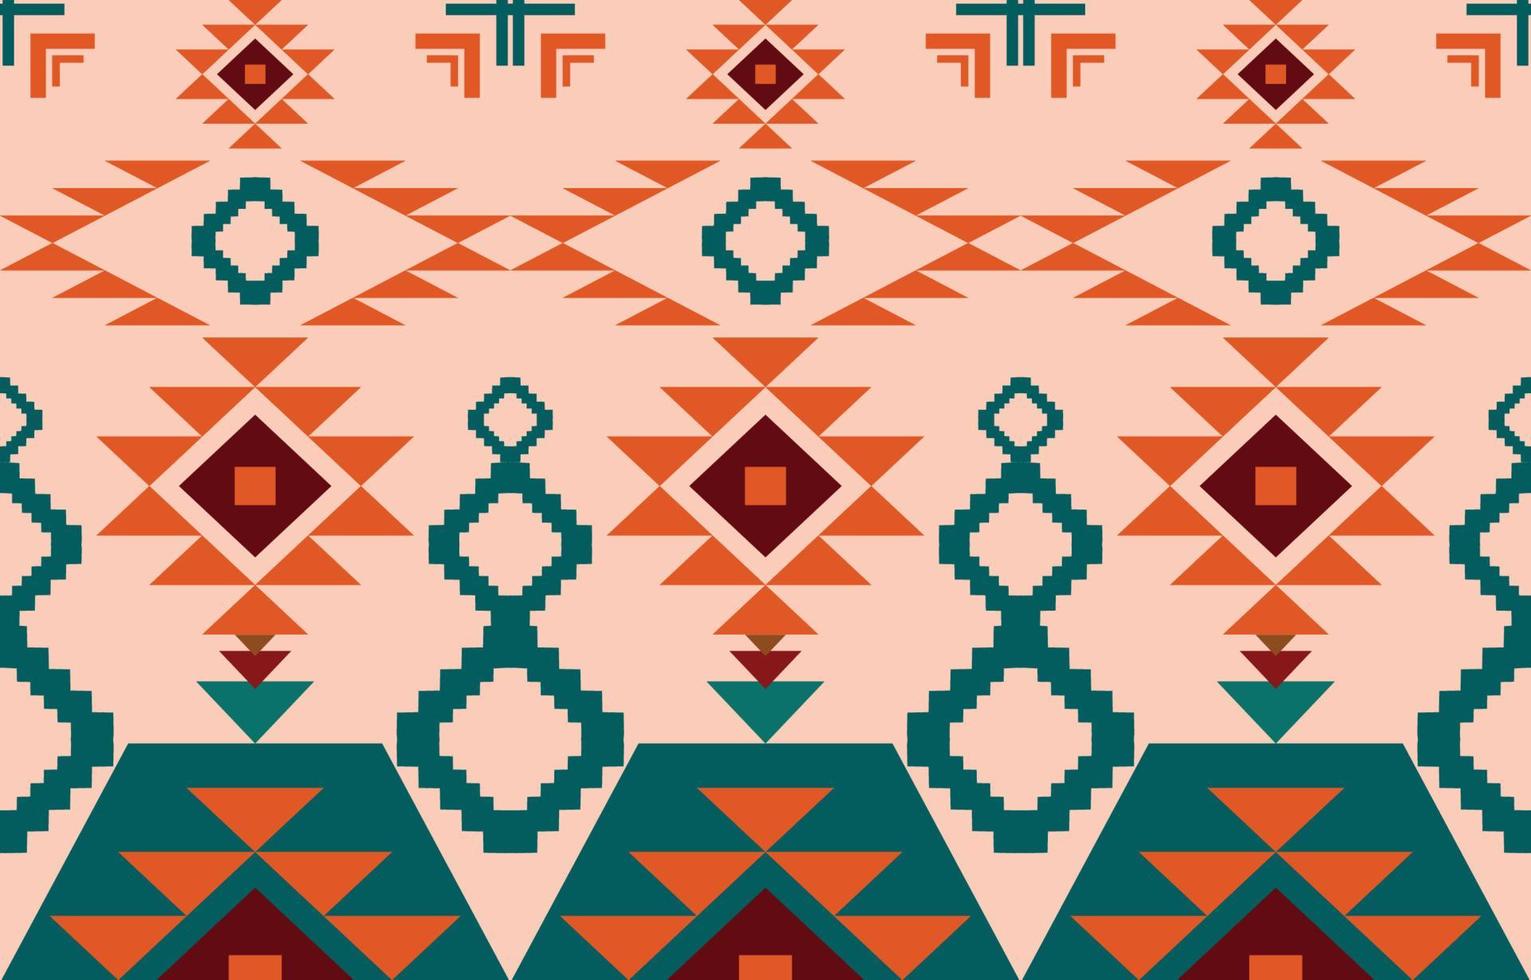 Mẫu vải thổ dân Navajo - Hình ảnh mẫu vải thổ dân Navajo với những họa tiết độc đáo, phong cách bản sắc đã mang đến cho bạn cảm giác gần gũi với văn hóa của người Mỹ bản địa. Cùng ngắm nhìn những hình ảnh này để tìm hiểu thêm về nền văn hóa đa dạng của dân tộc Navajo.